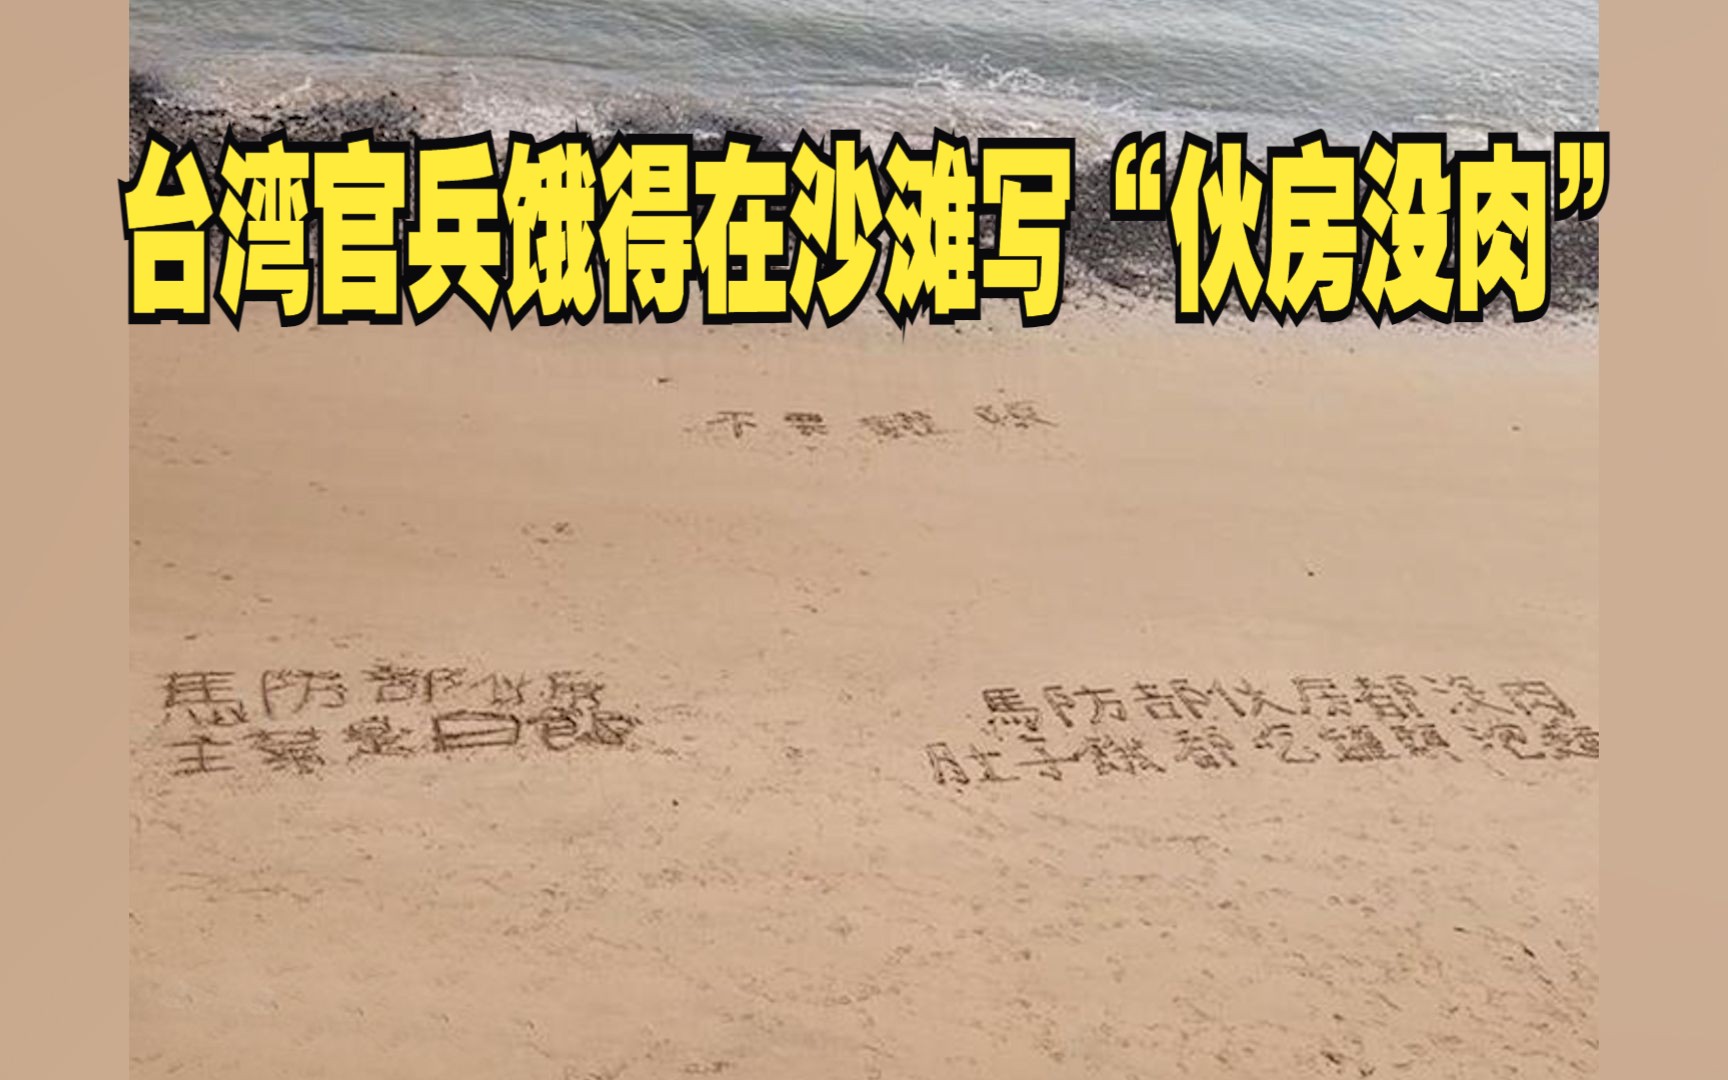 台湾官兵饿得在沙滩写“伙房没肉”